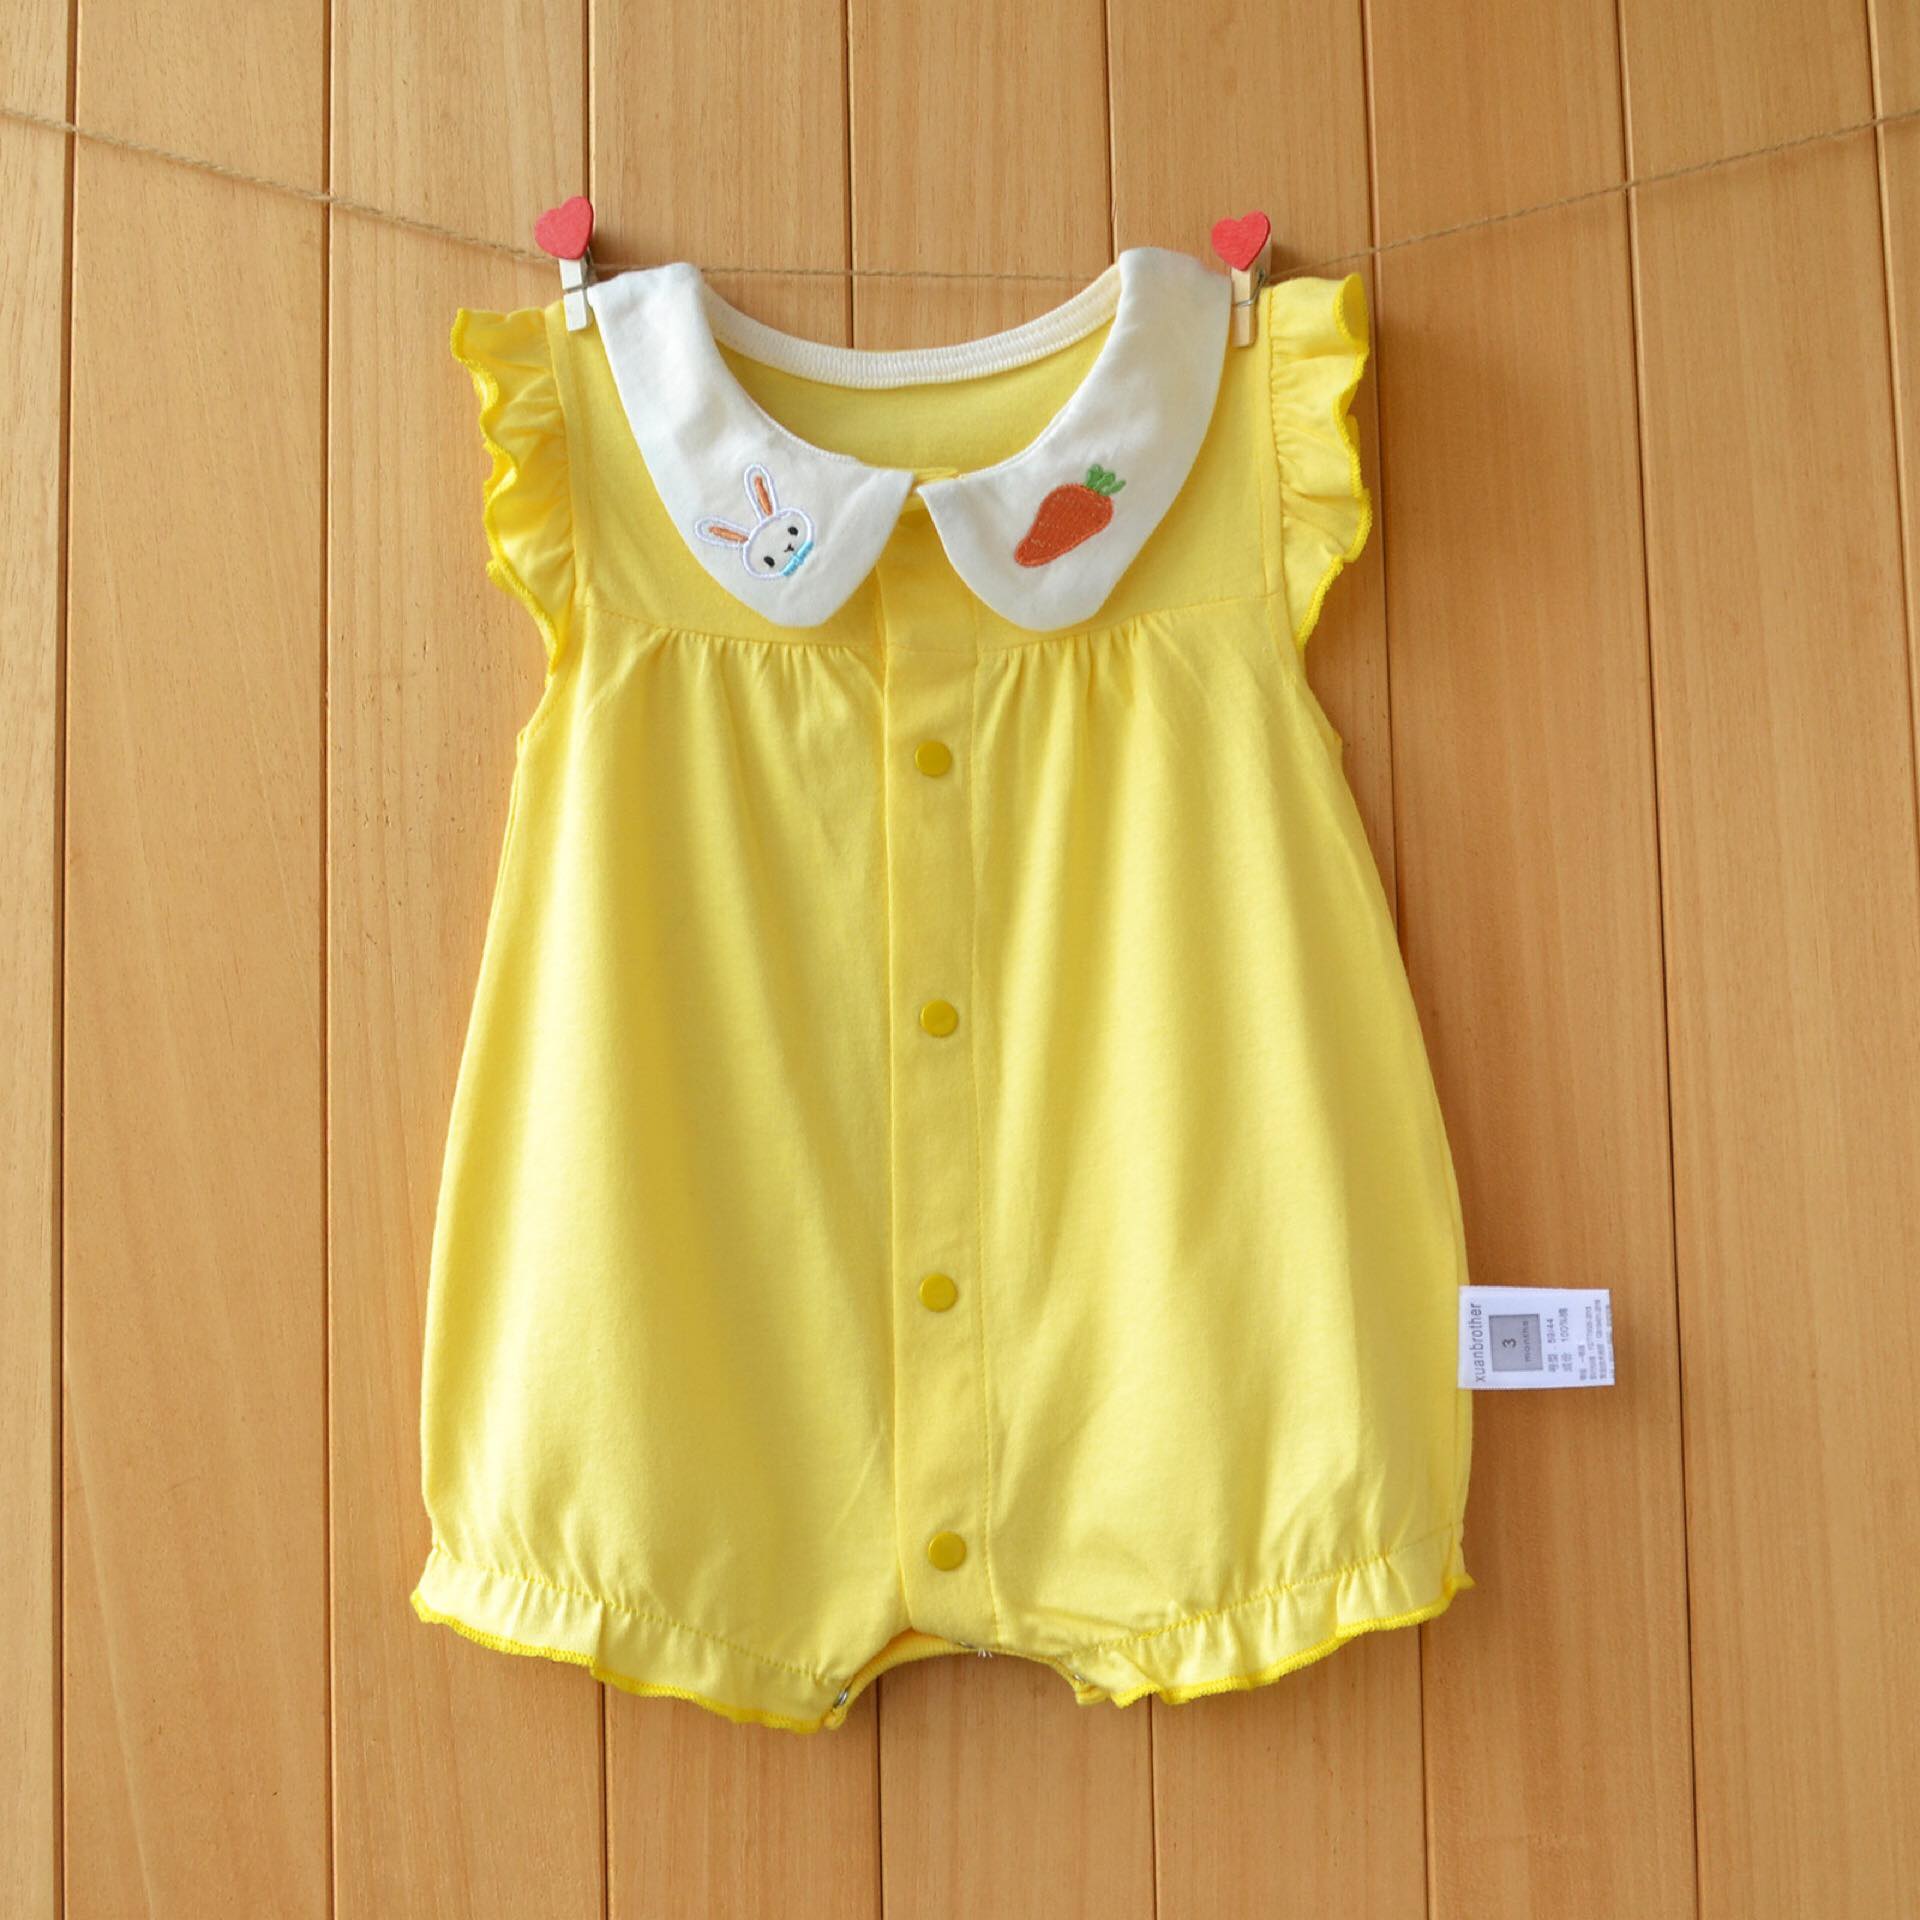 ชุดบอดี้สูทขาสั้นสีเหลืองสดใส สำหรับเด็กผู้หญิง Items สุดน่ารัก ผลิตจากผ้าฝ้ายแท้ 100%